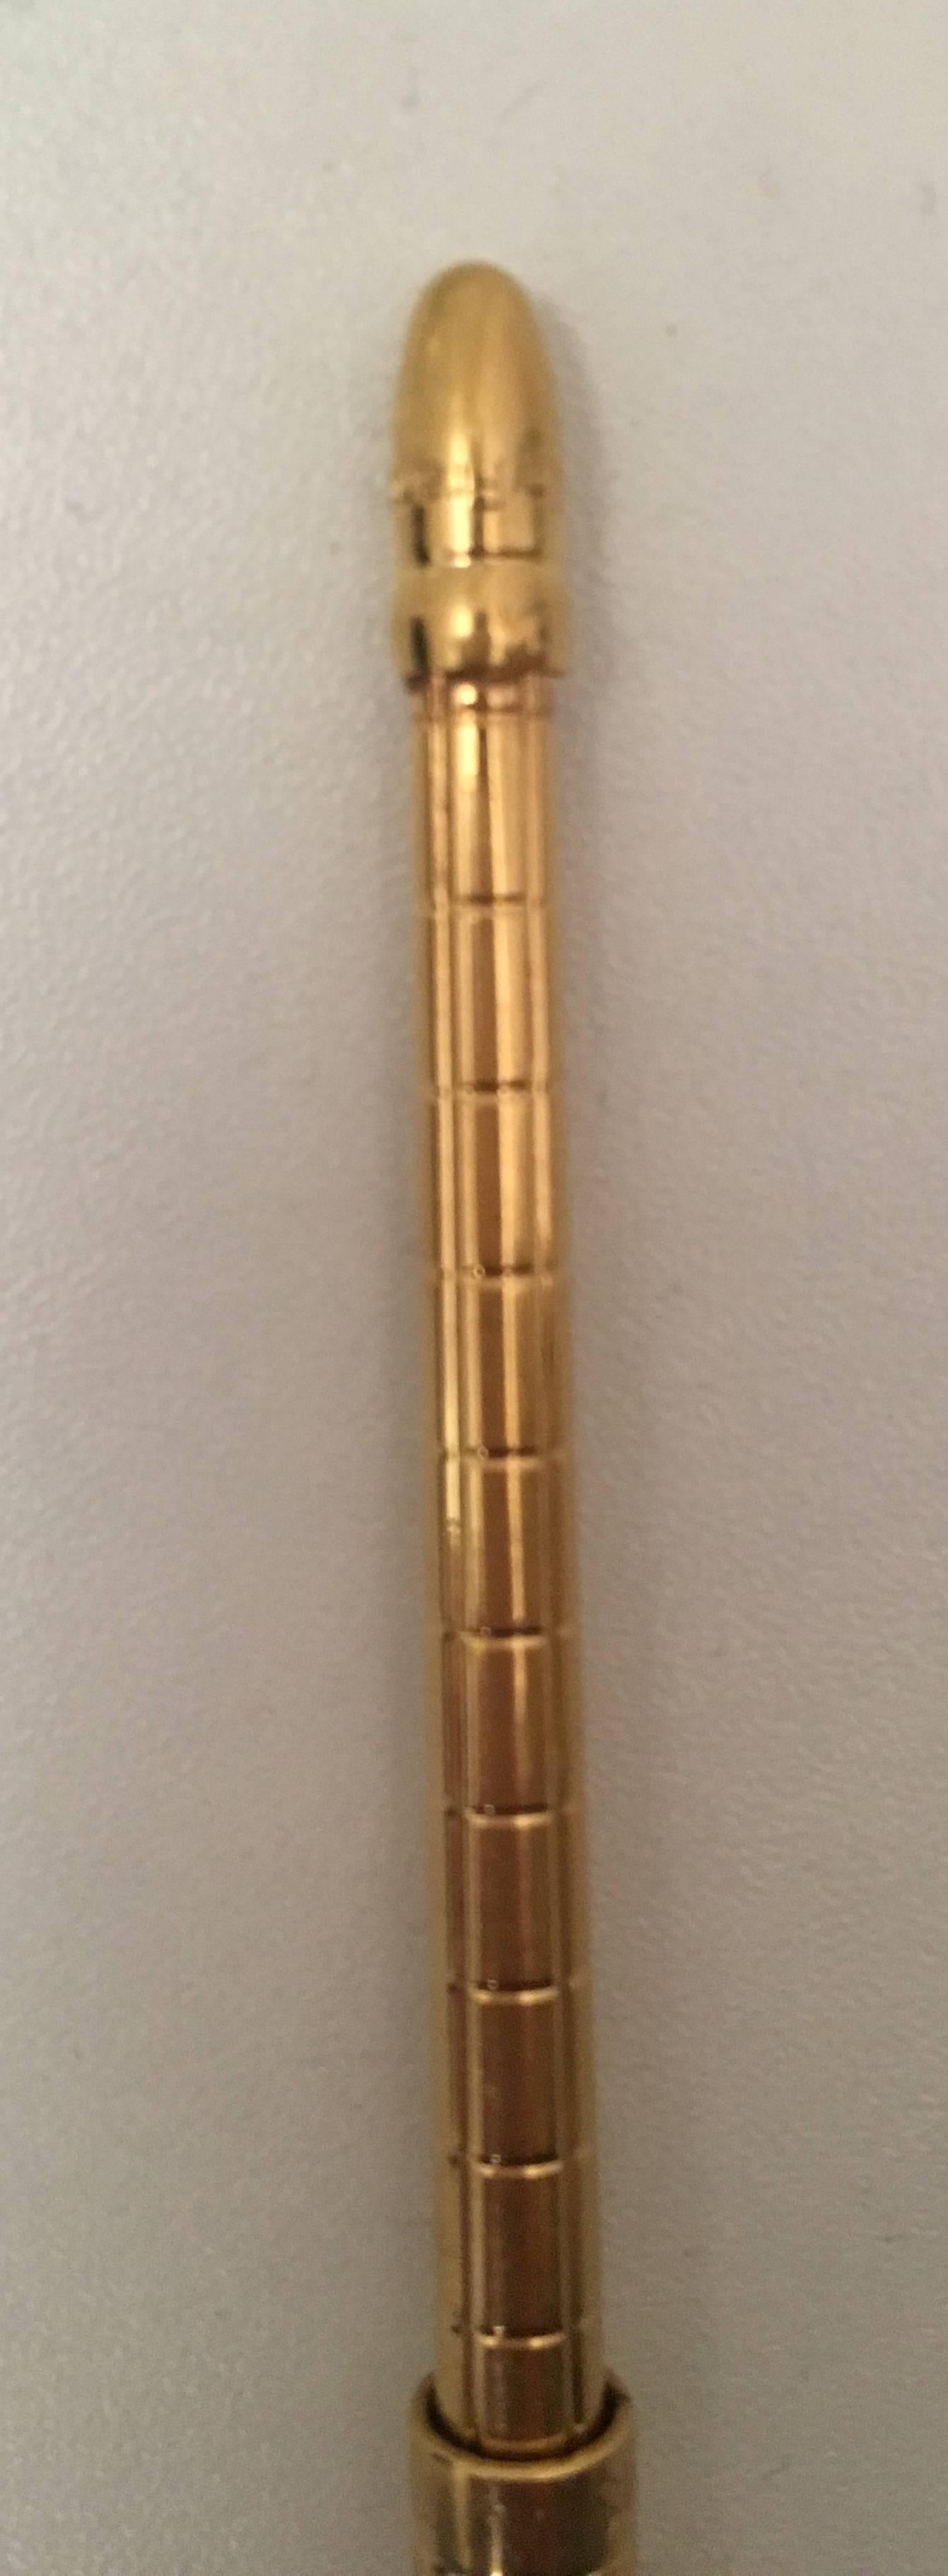 New Louis Vuitton Golden Agenda Ballpoint Pen w/ Refill 2